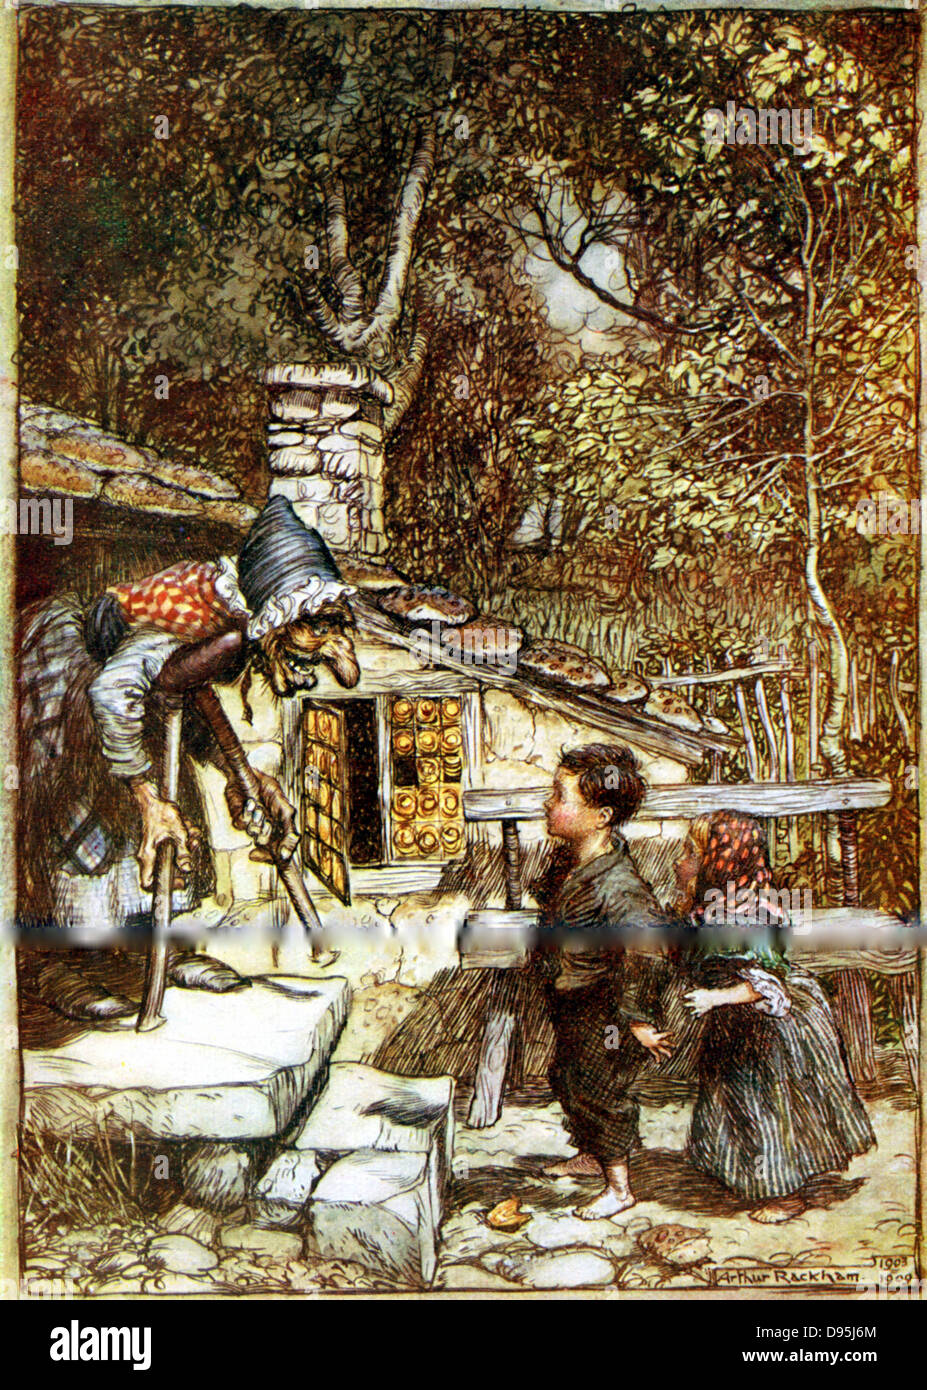 Hansel et Gretel et la sorcière à la porte de son chalet, montrant des tuiles d'épices. Arthur Rackham illustration publiée pour 1899 histoire de fées des frères Grimm. Banque D'Images